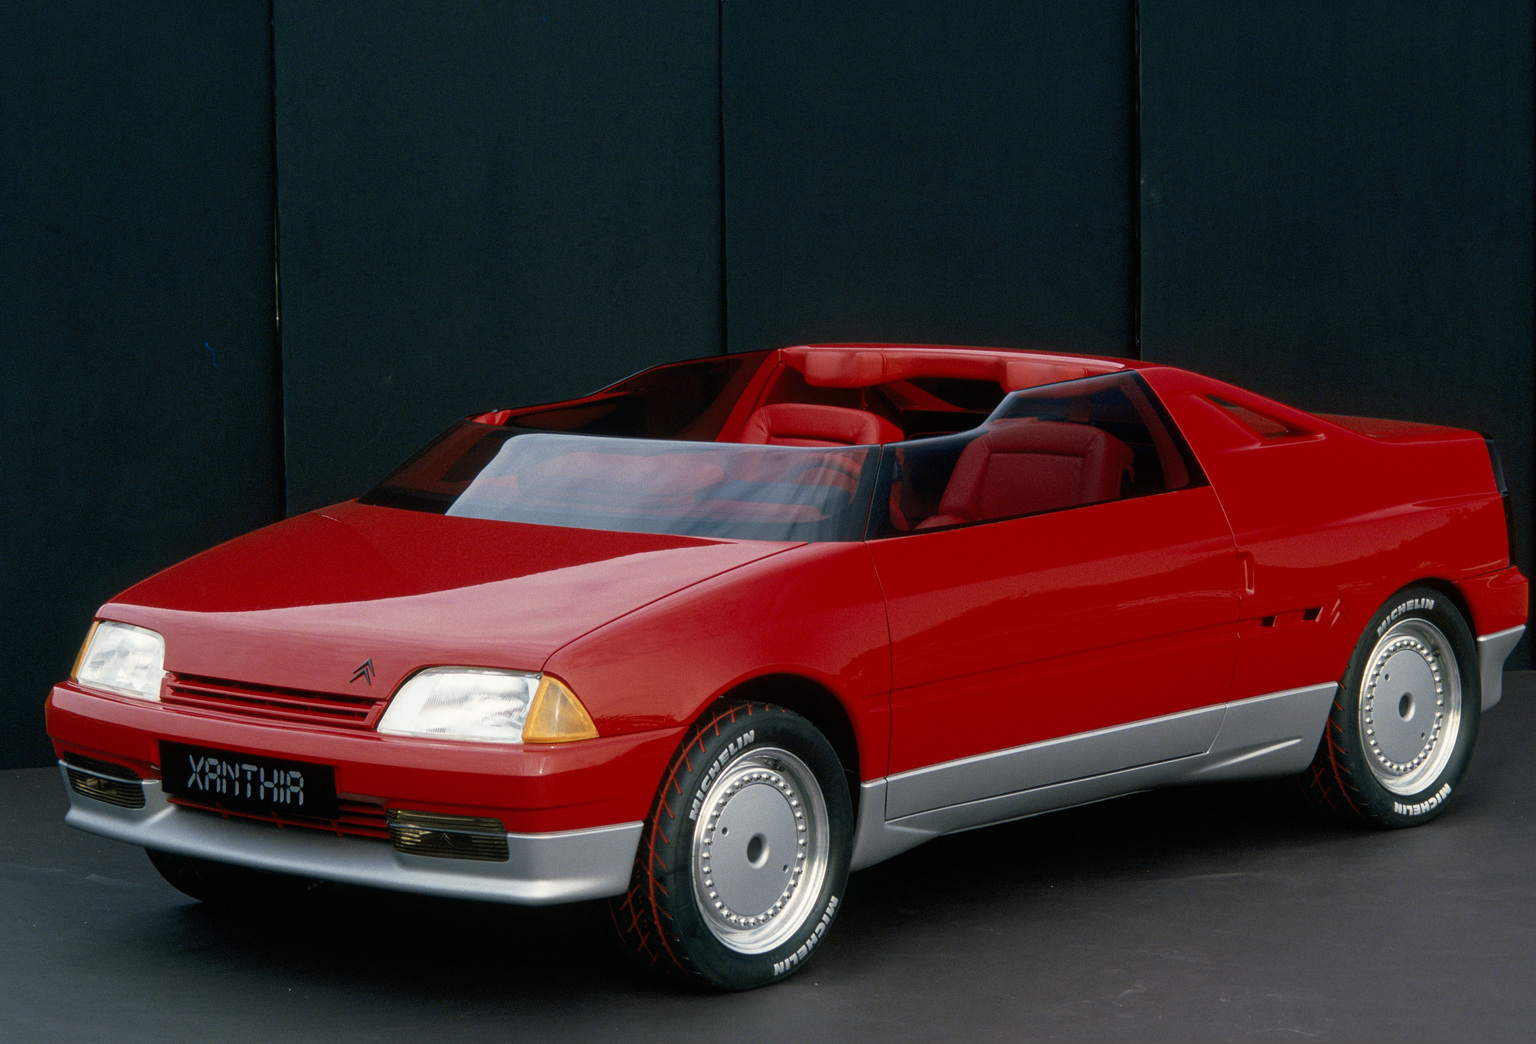 1986 Citroën Xanthia